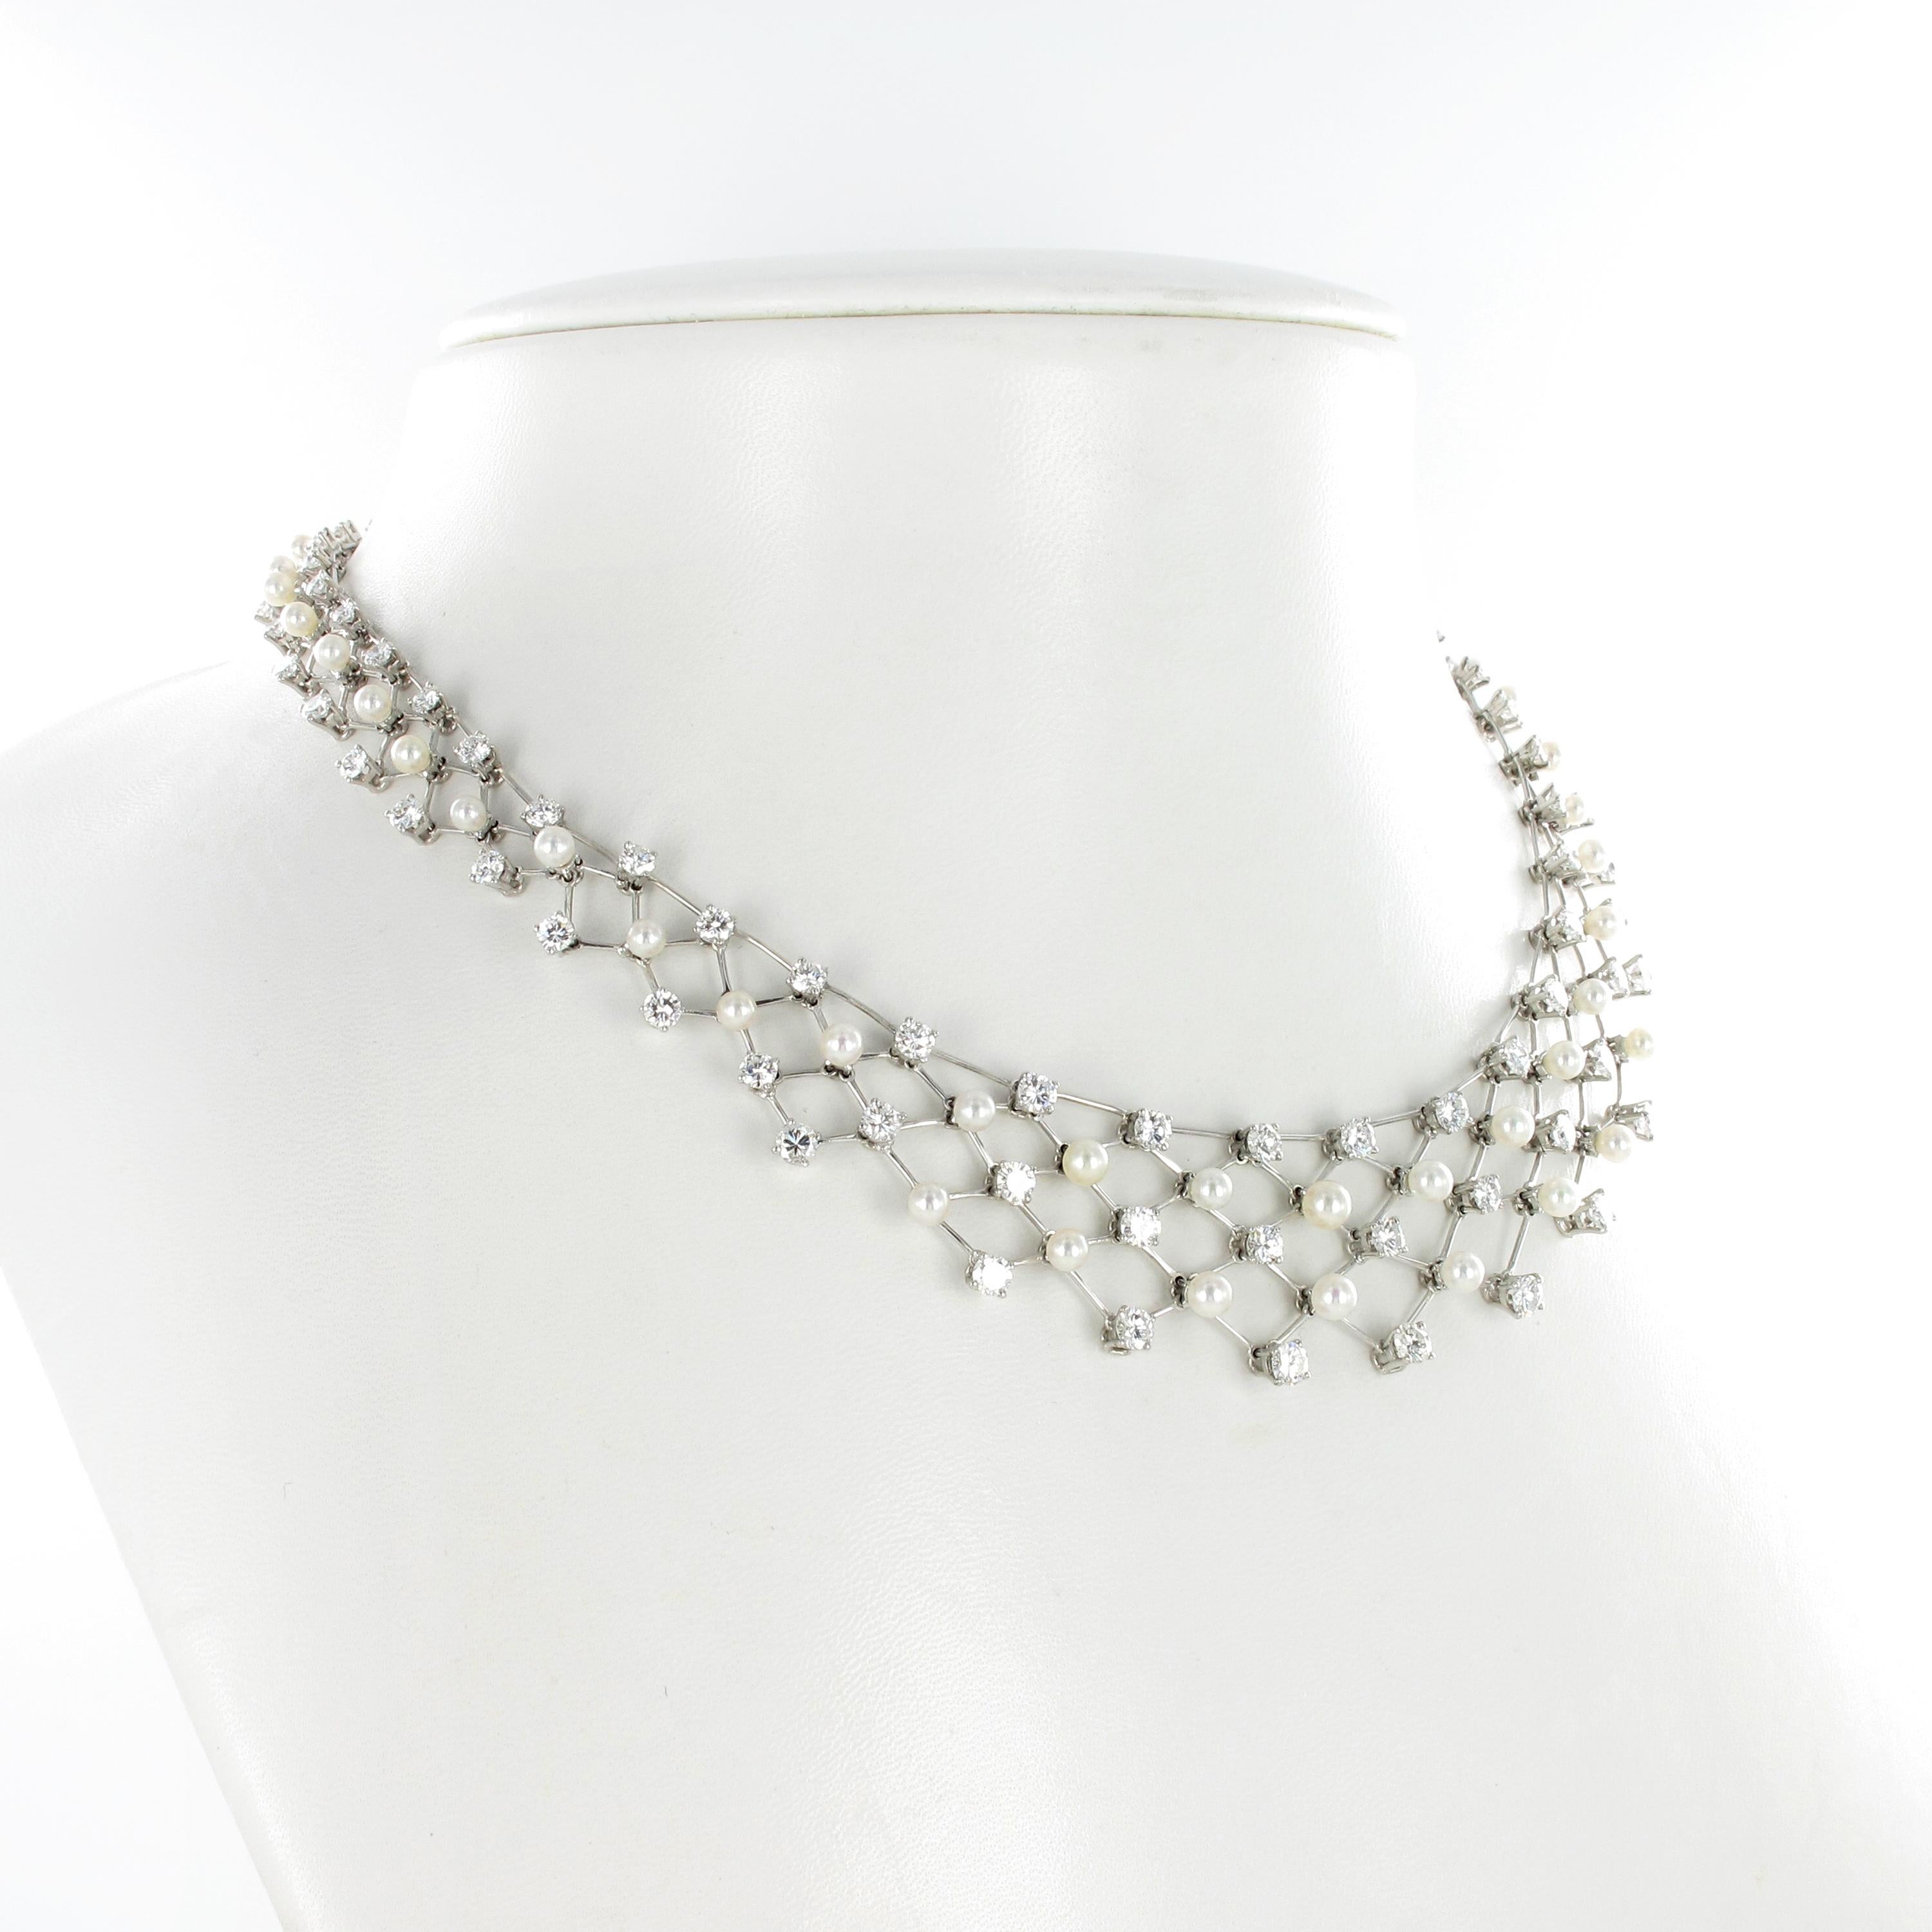 Ce collier artisanal délicat et flexible en platine est serti de 95 diamants taille brillant de couleur G/H et de pureté vs, d'un poids total d'environ 10,00 carats. Accentué par 51 magnifiques perles de culture Akoya rondes au lustre superbe, dont